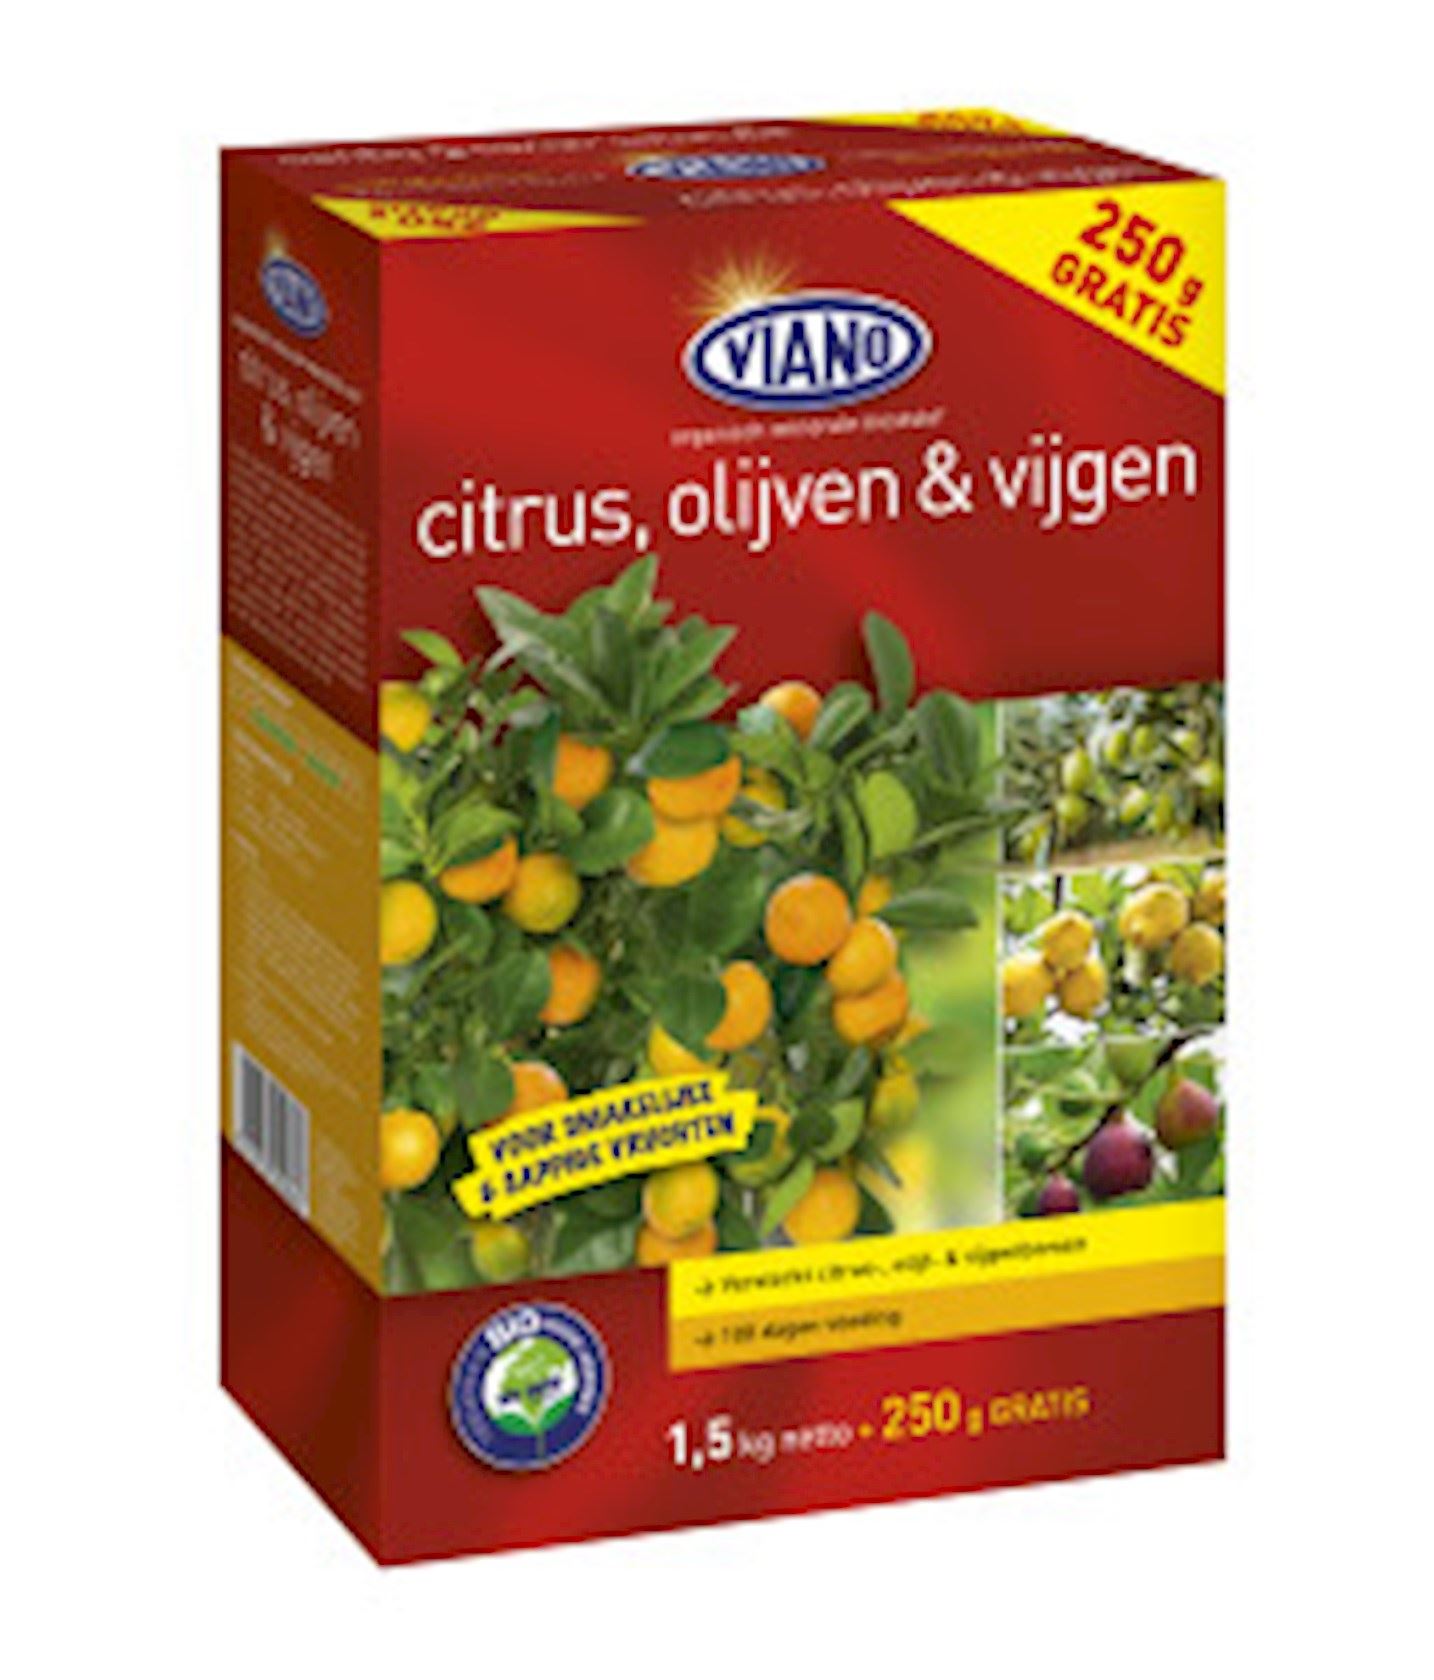 Citrus-Olijven-vijgen-meststof-doos-1-5-kg-250gr-gratis